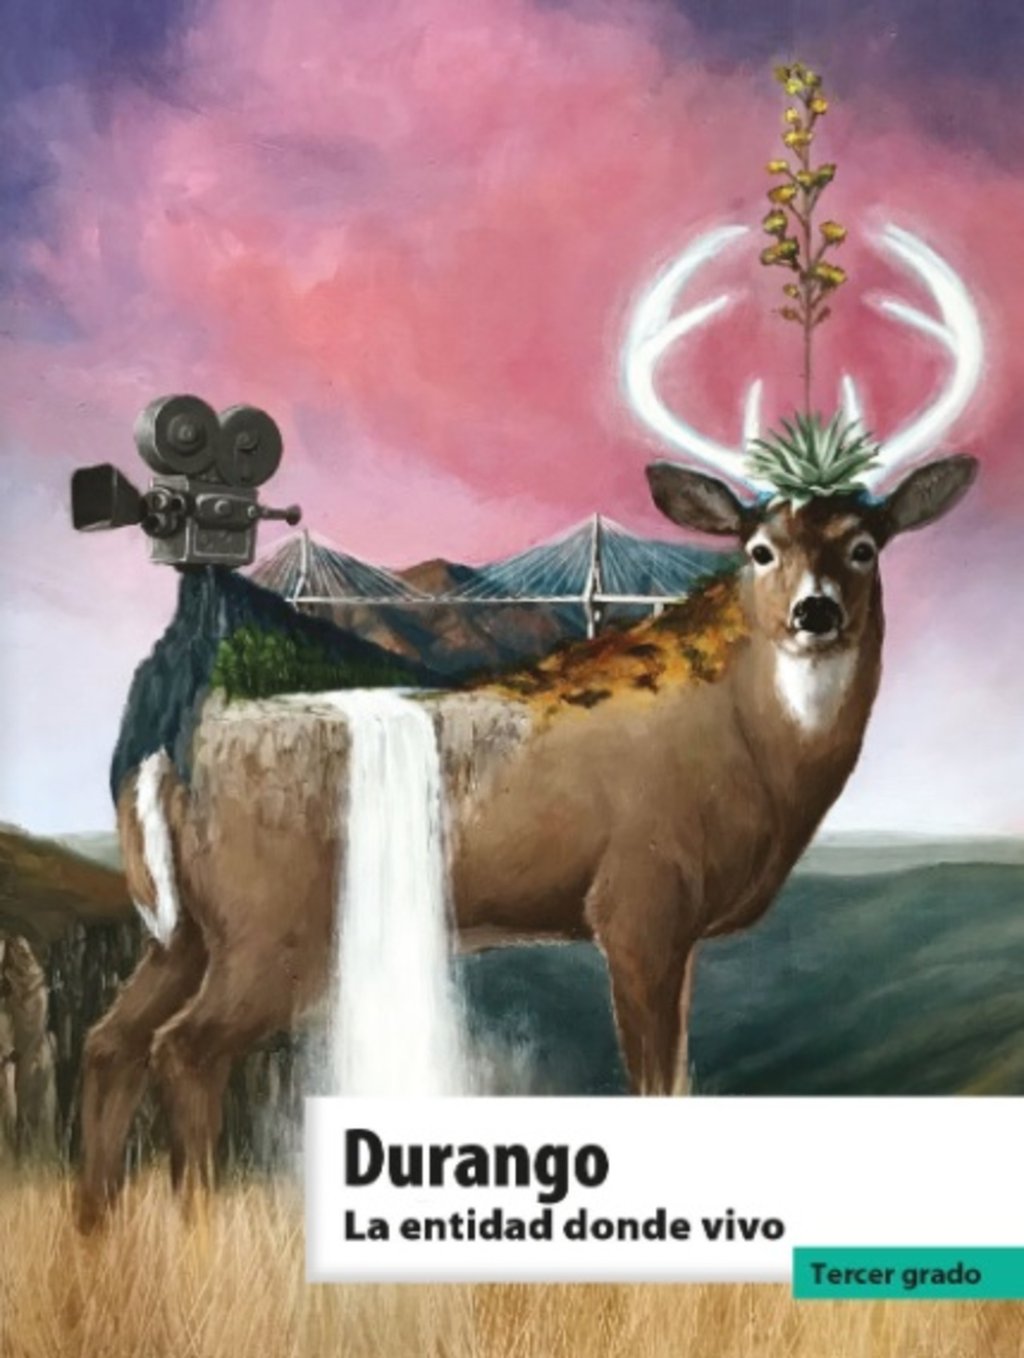 Renovaron libro de texto de Durango